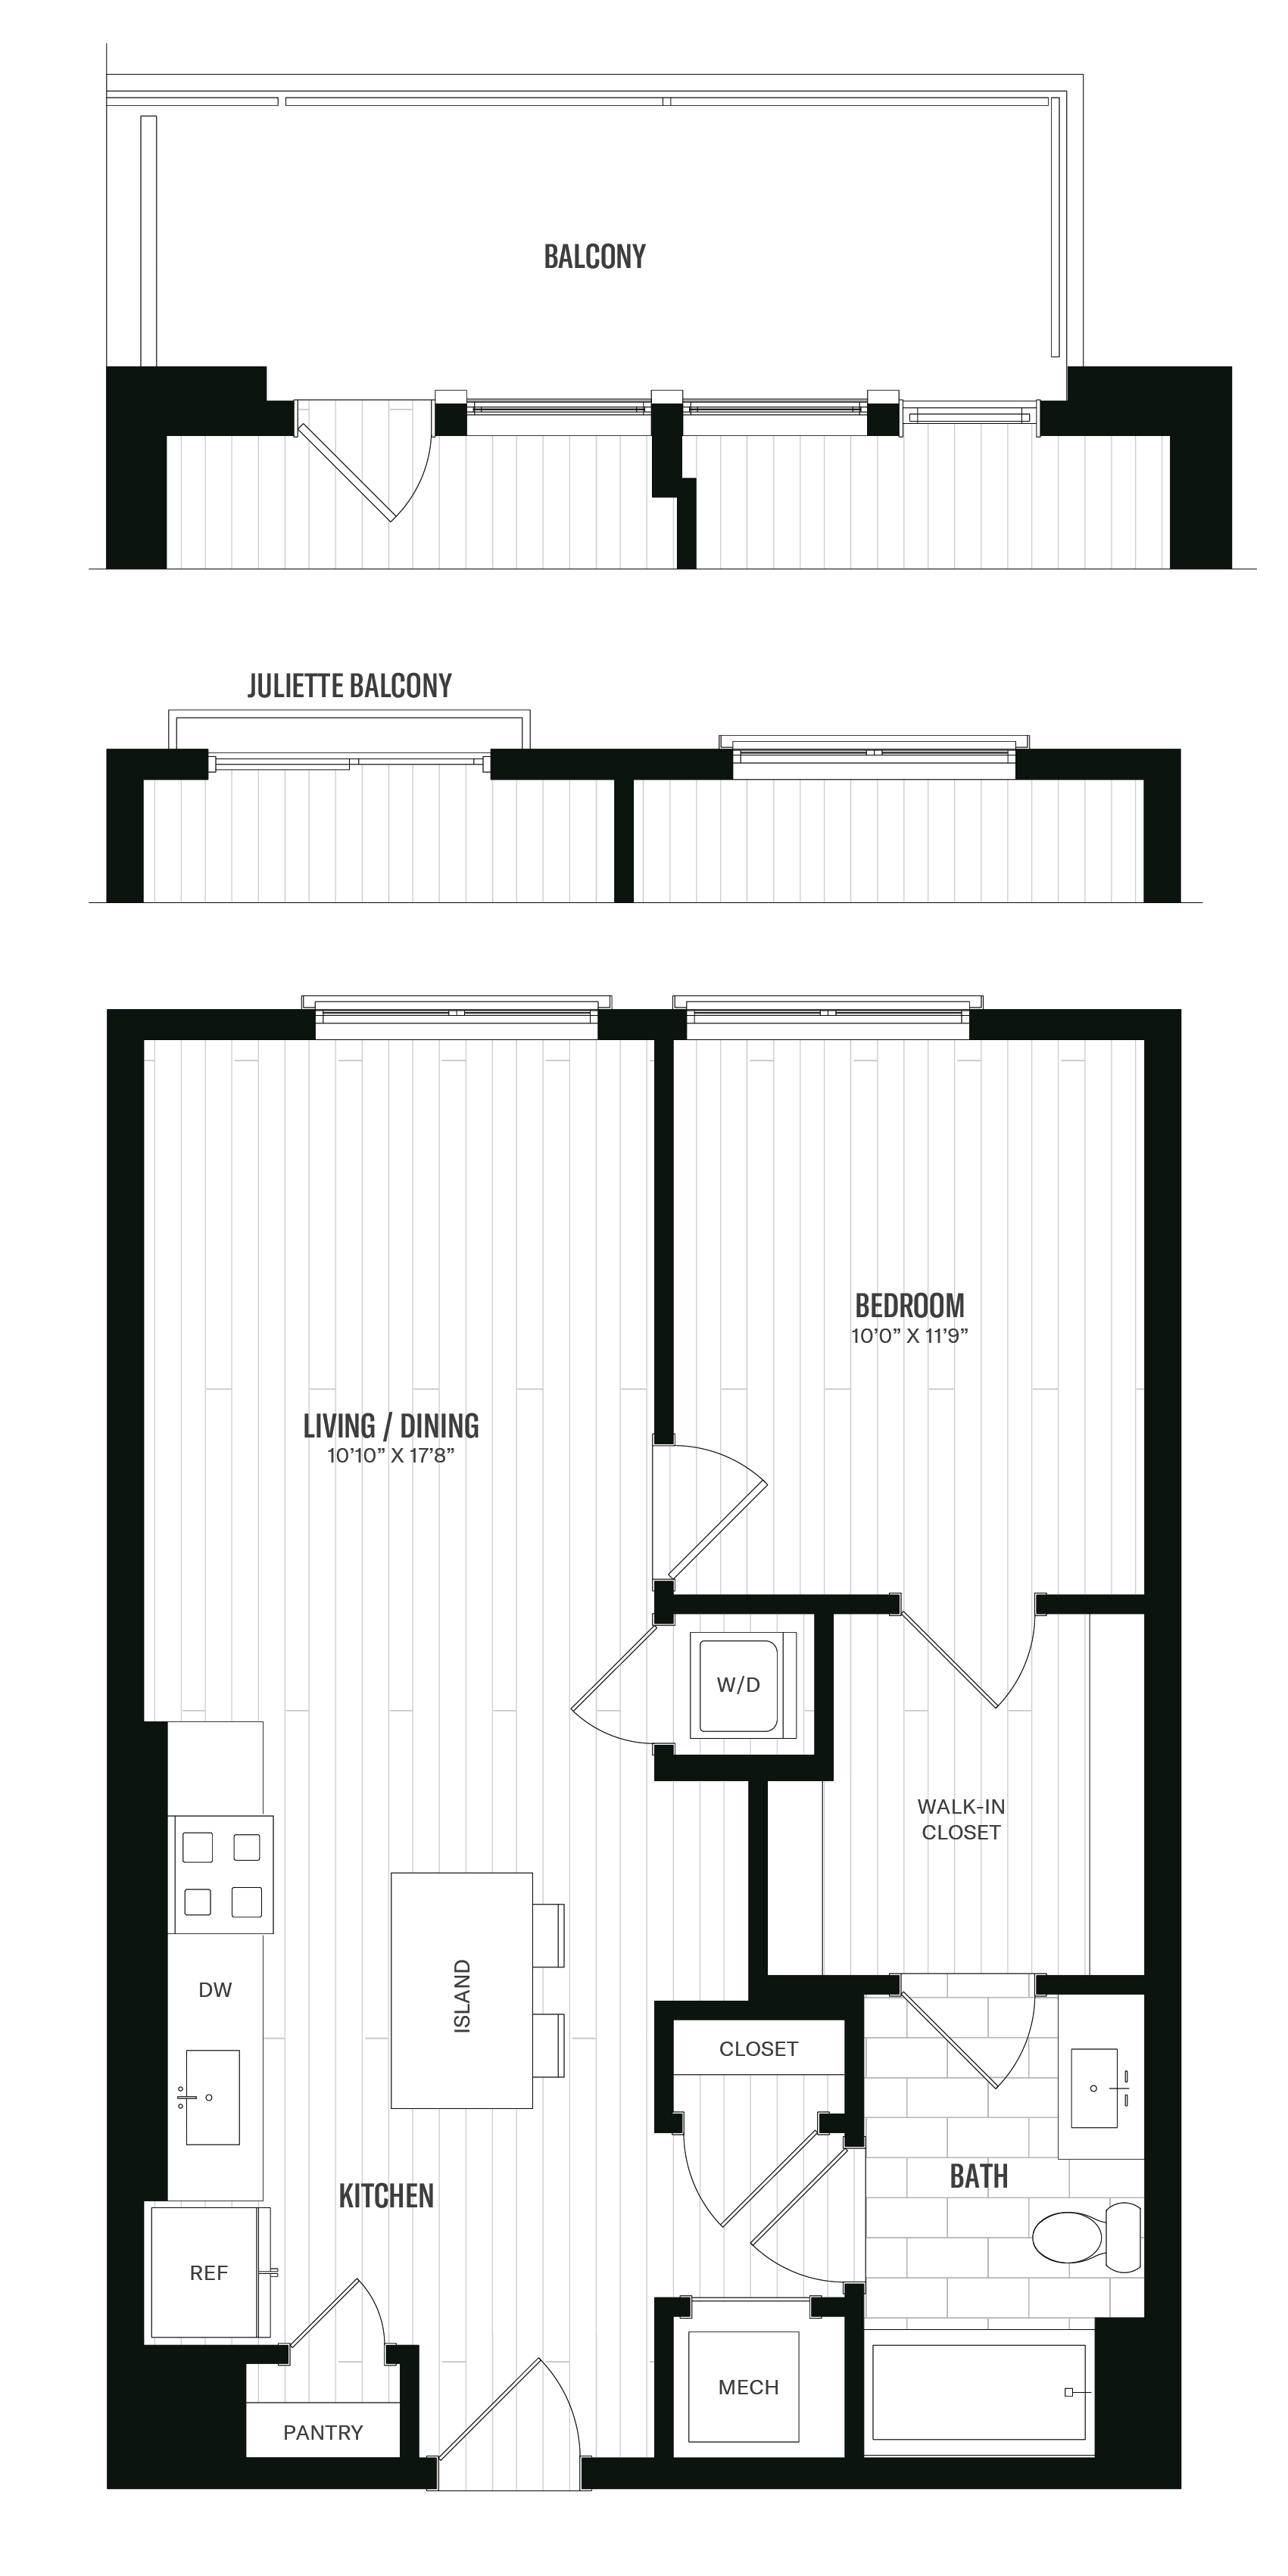 Floorplan image of unit 261